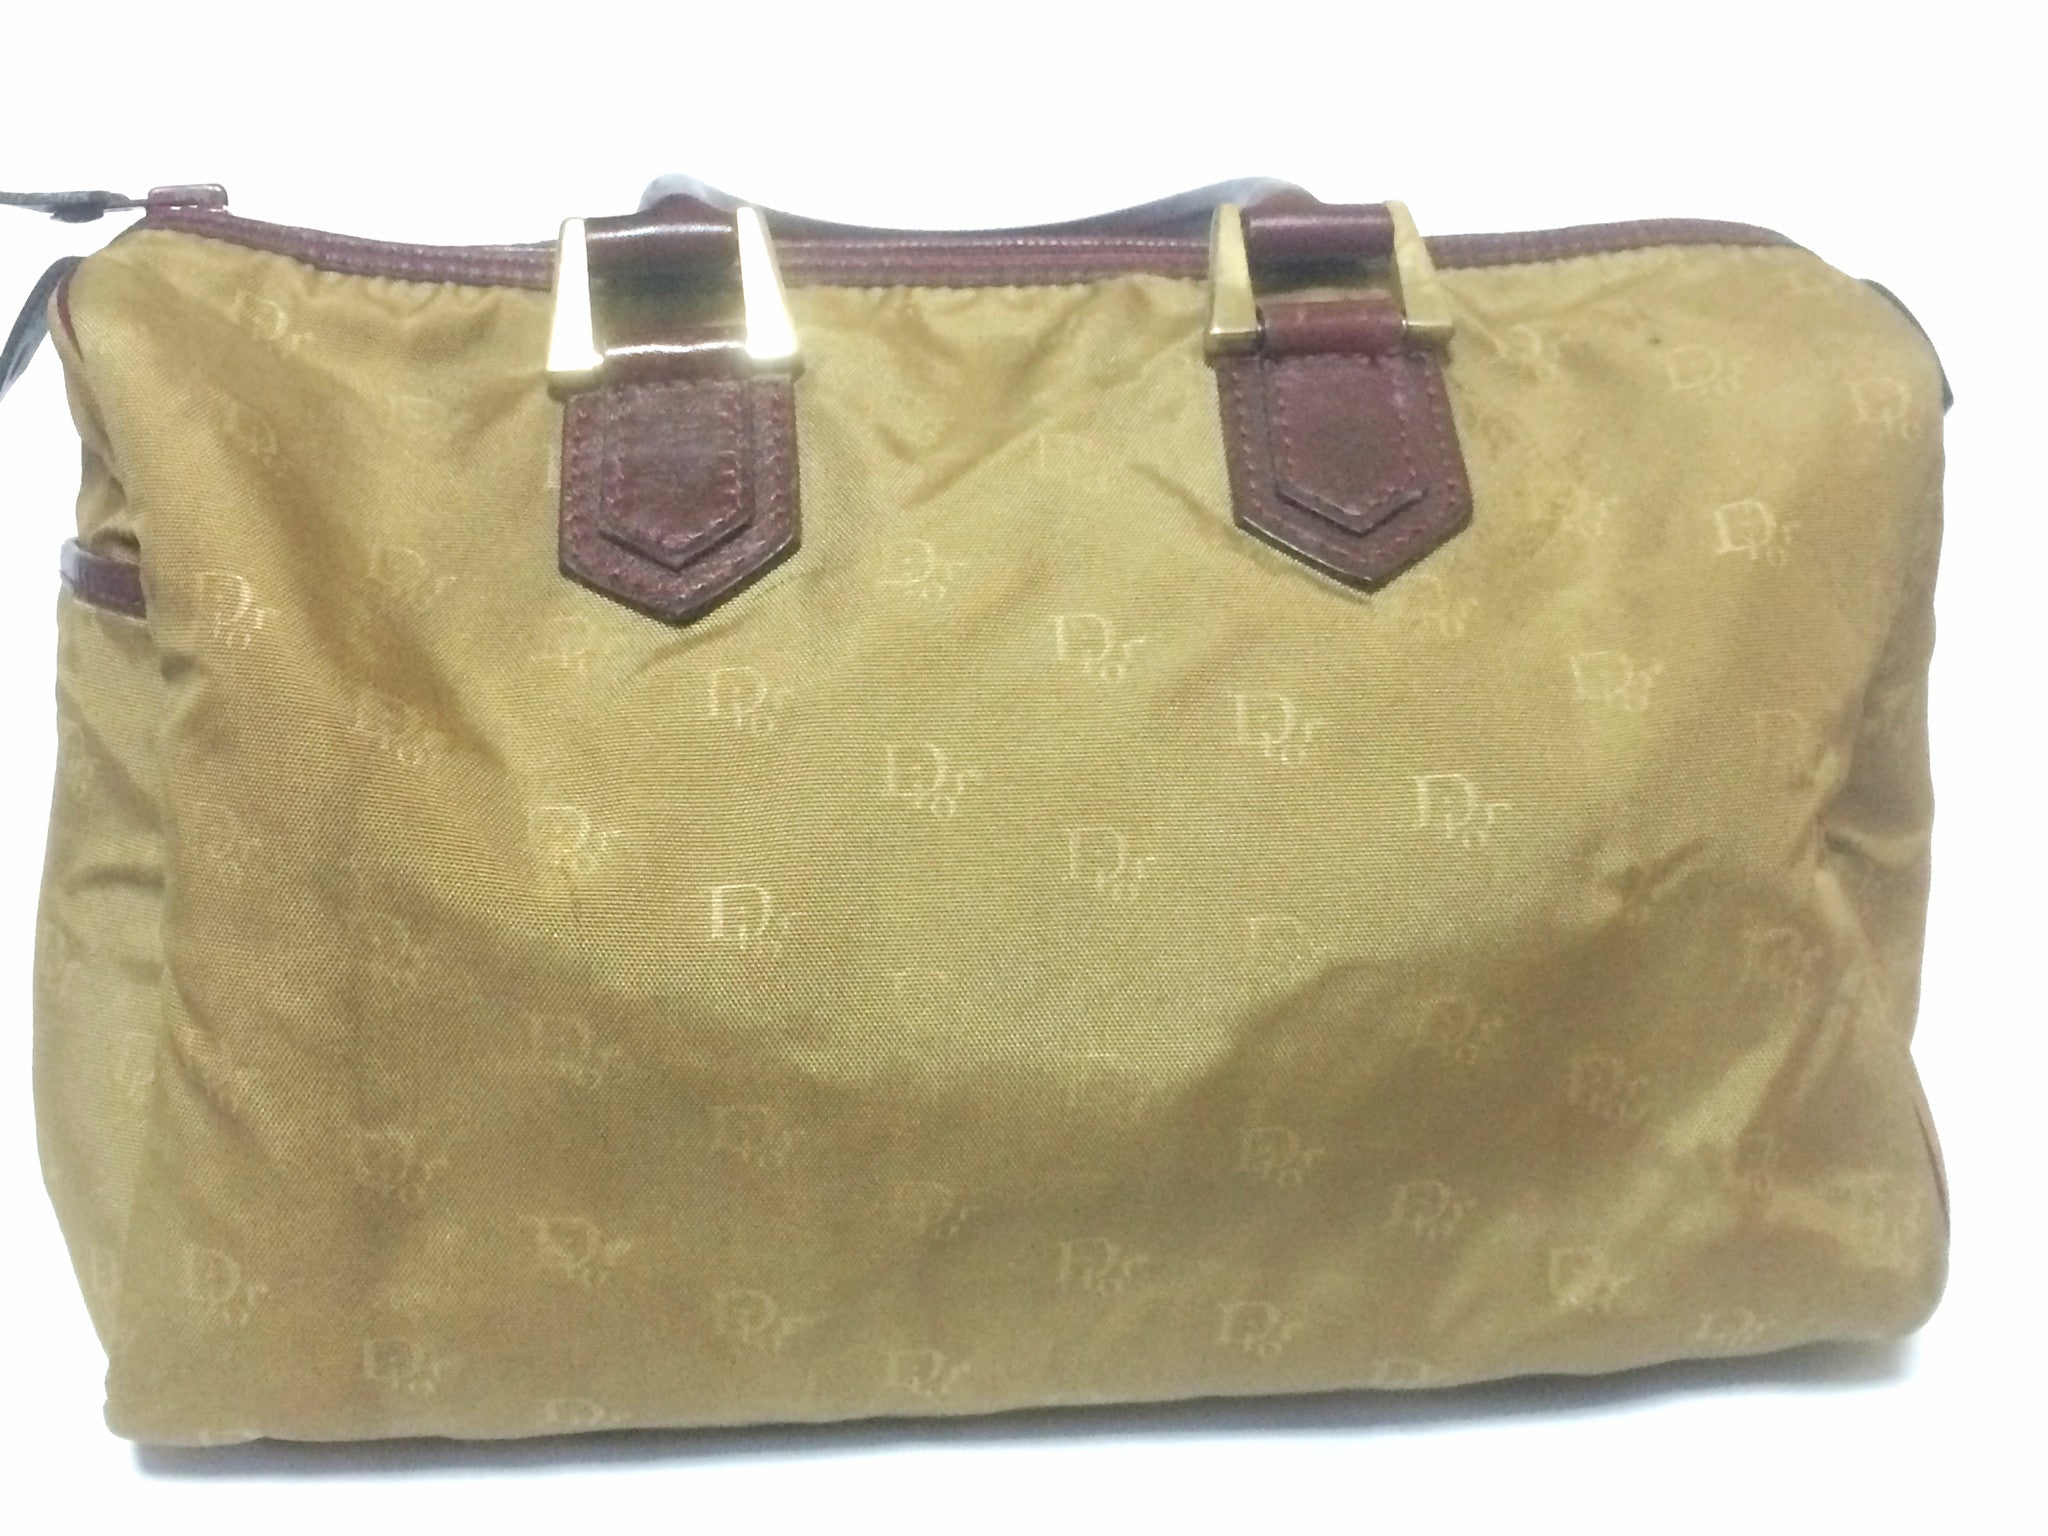 Dior Authenticated Speedy Handbag